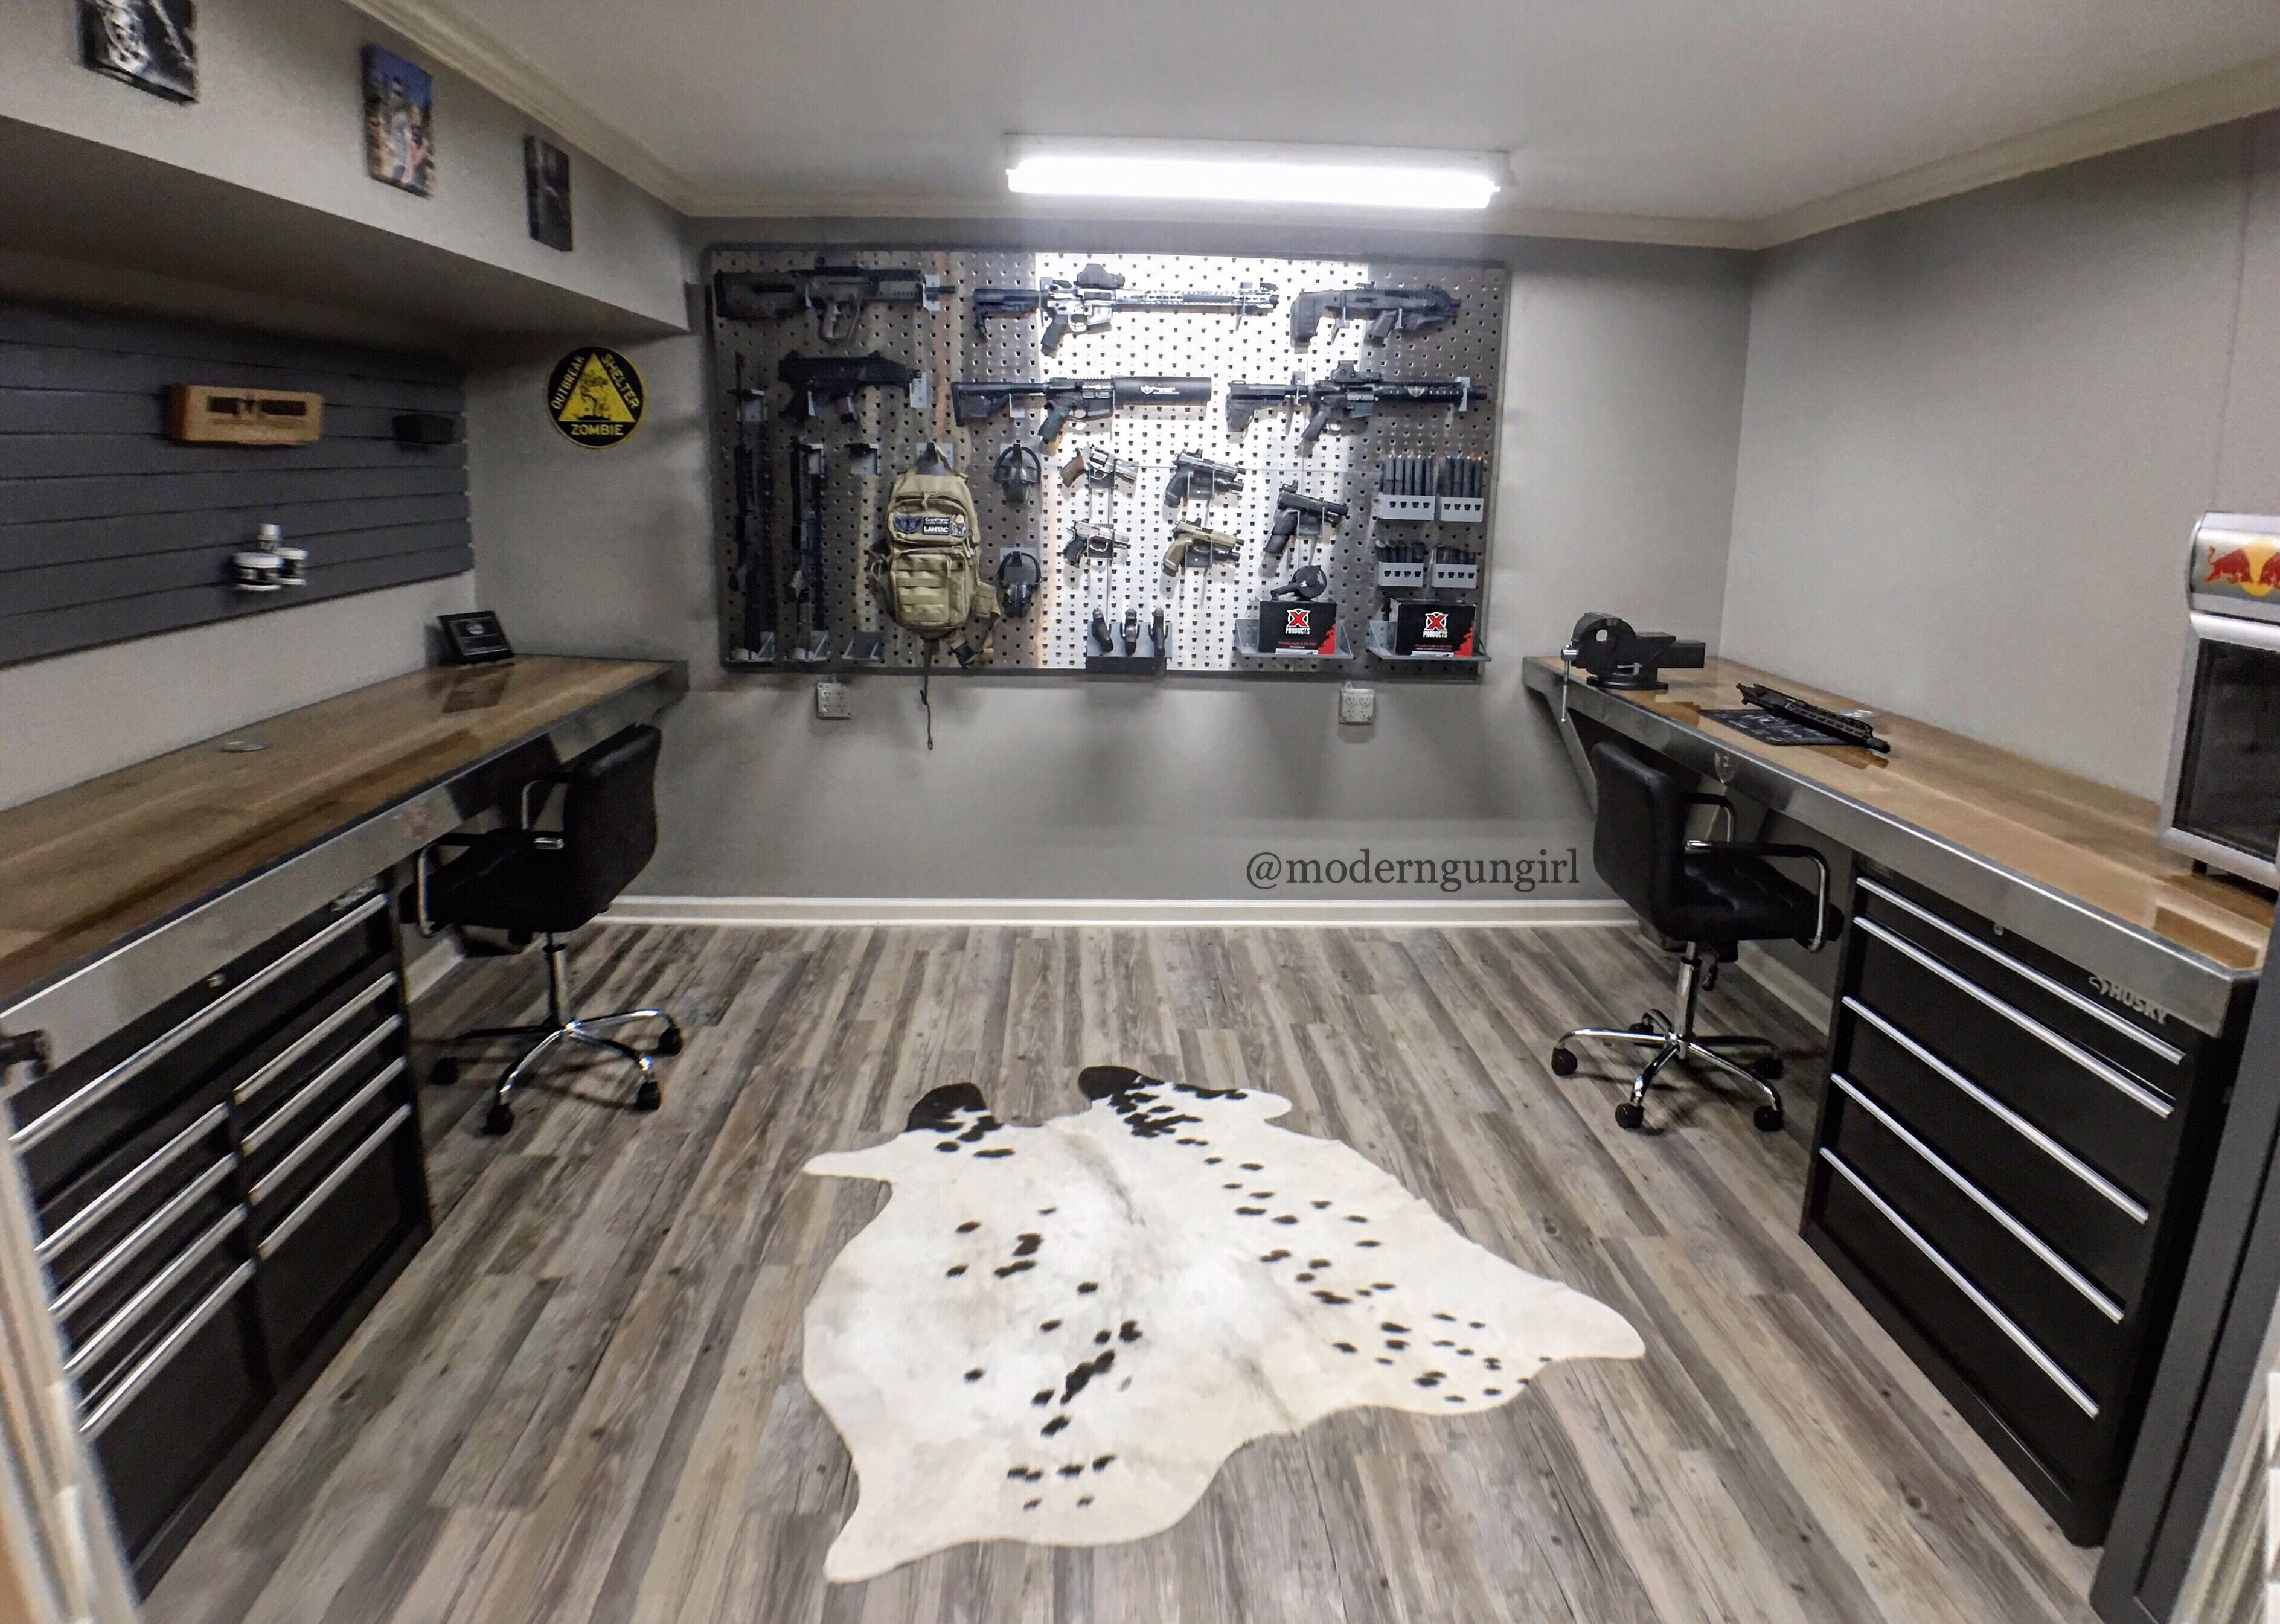 Тир столы. Комната в гаражном стиле. Комната в стиле мужской берлоги. Оружейная комната. Комната с оружием.